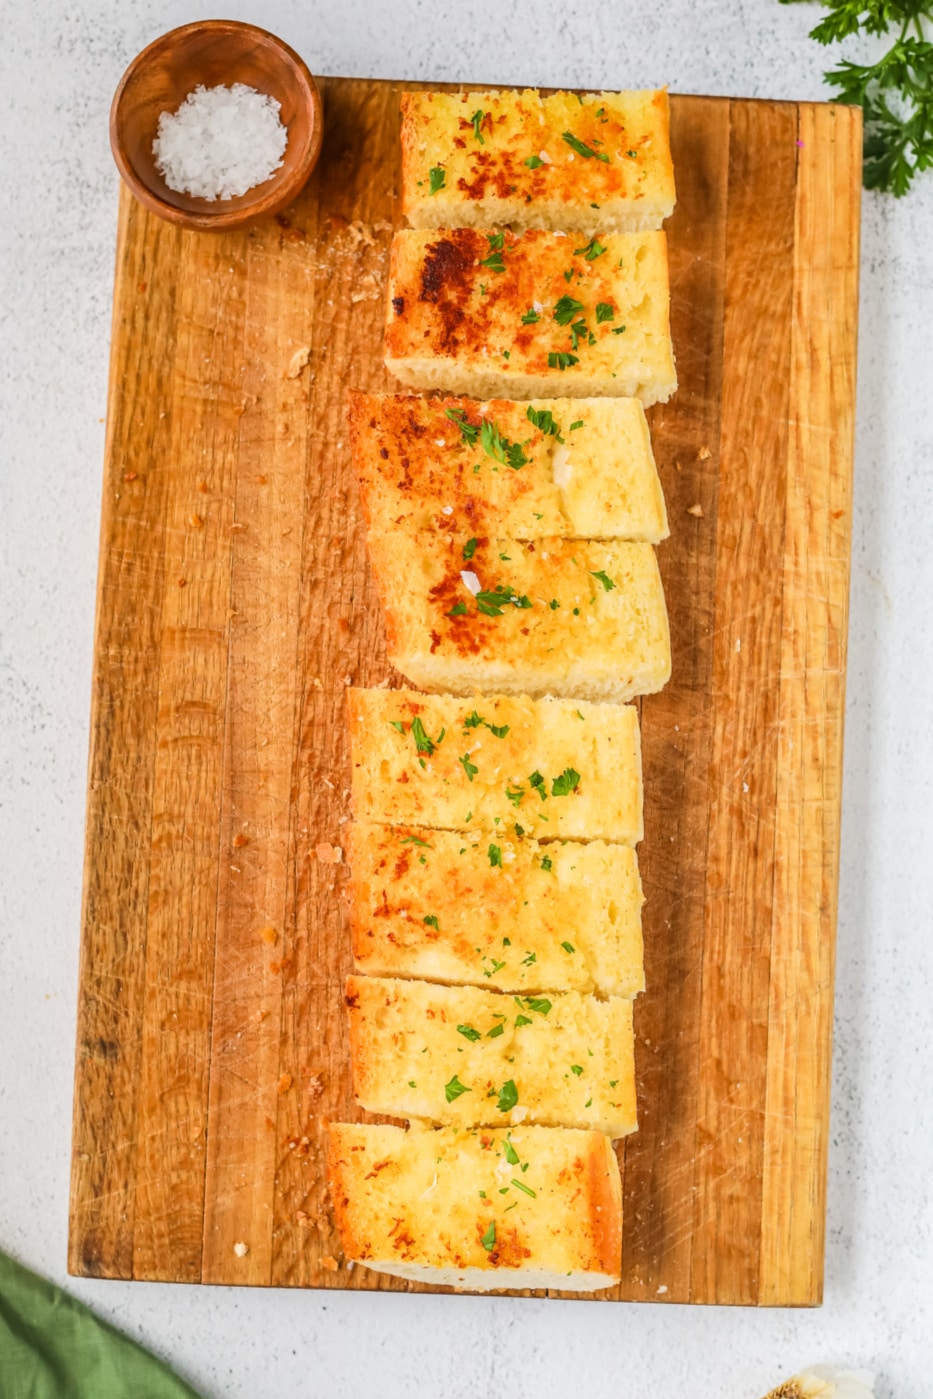 Sliced garlic bread garnished with chopped parsley on a wood cutting board.